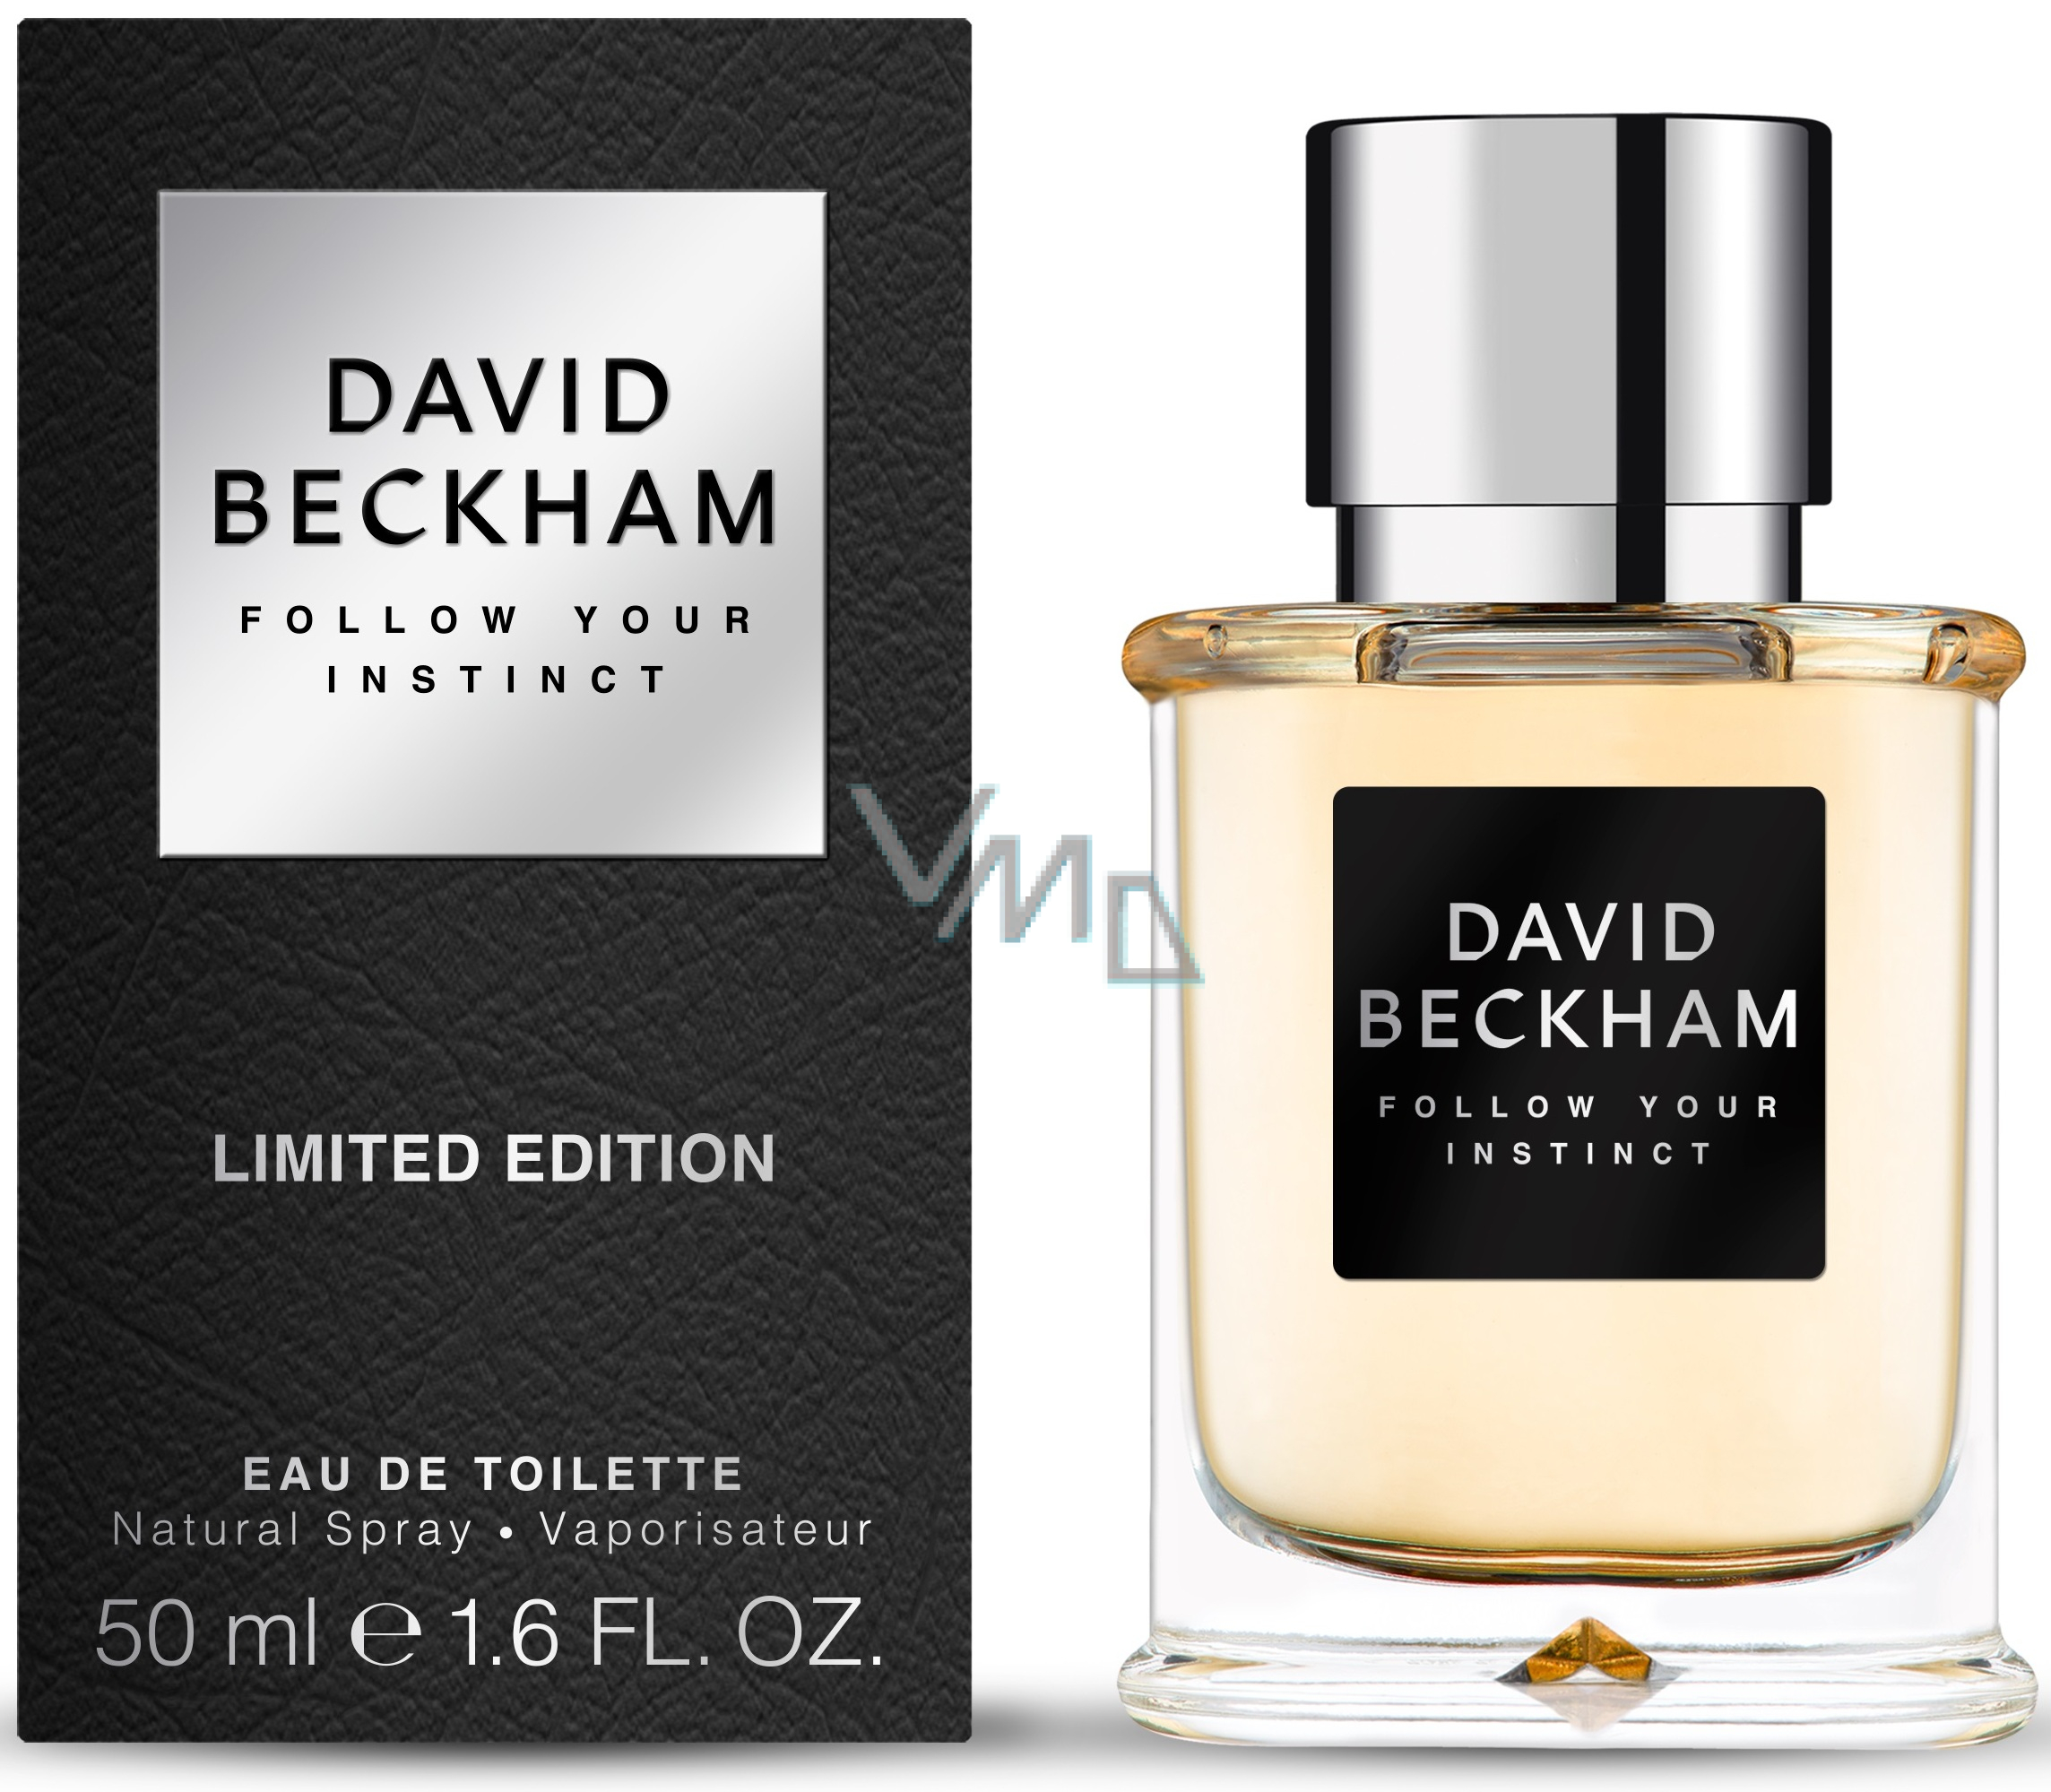 David Follow Your Instinct Eau de Toilette for Men 50 ml - parfumerie - drogerie